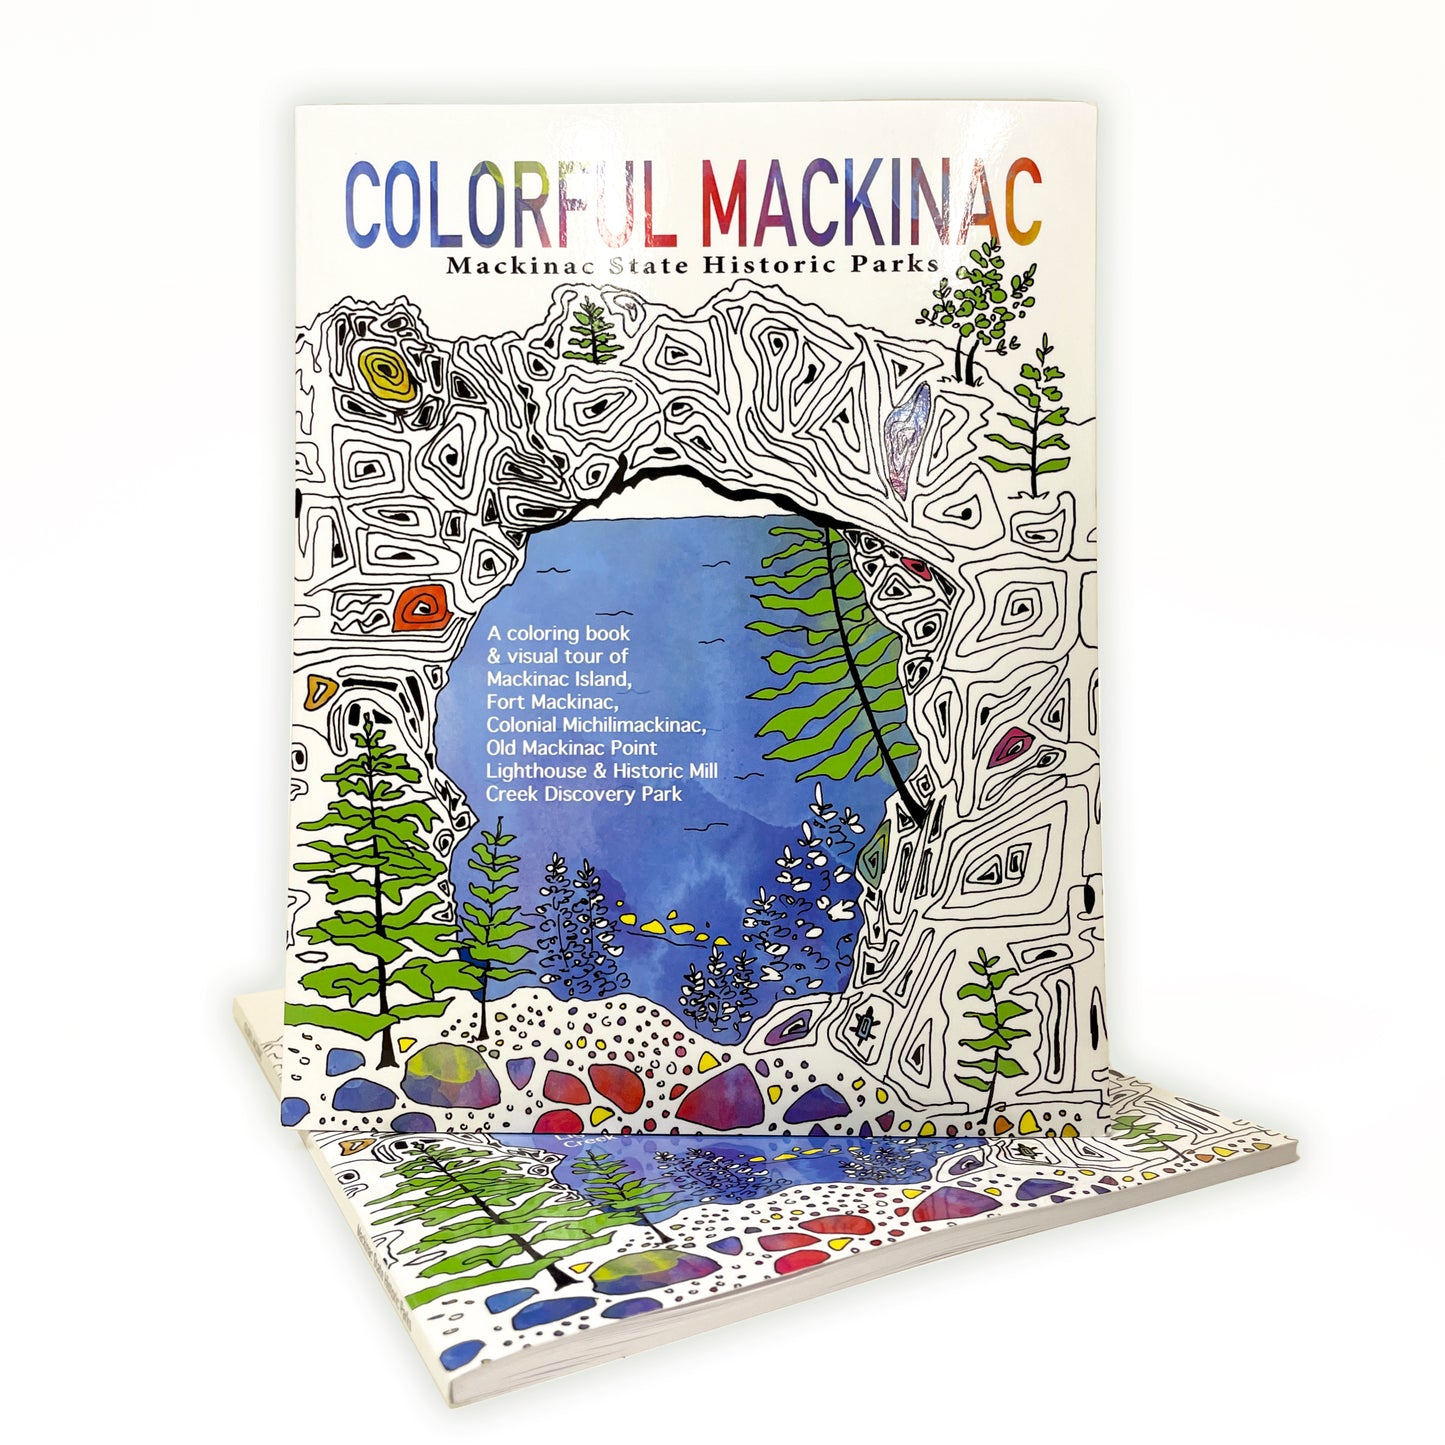 COLORFUL Mackinac Coloring Book